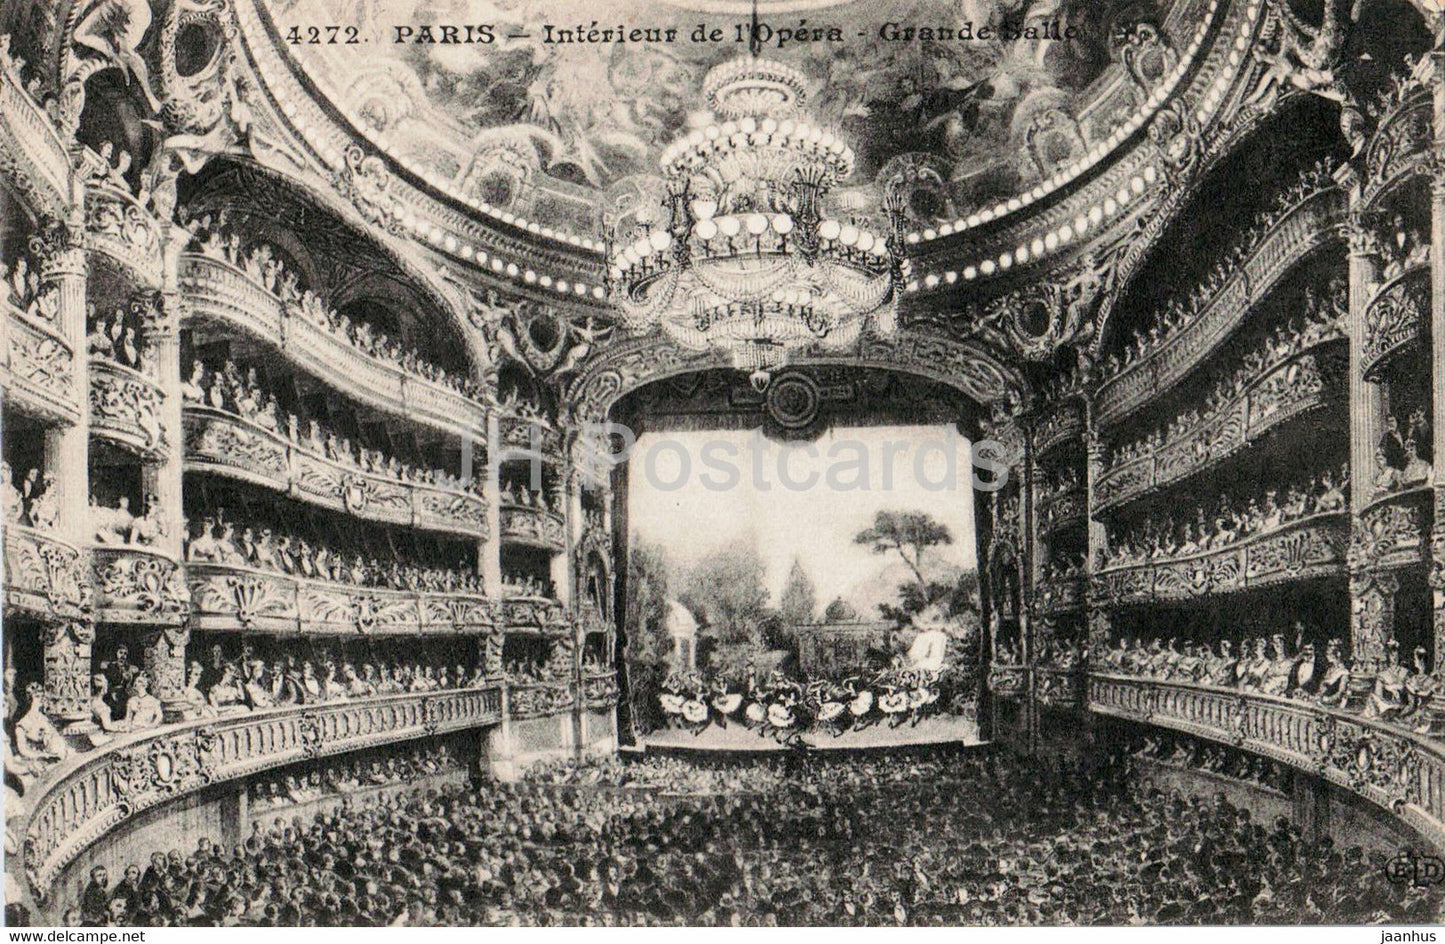 Paris - Interieur de l'Opera - Grande Salle - opera theatre - 4272 - old postcard - France - unused - JH Postcards